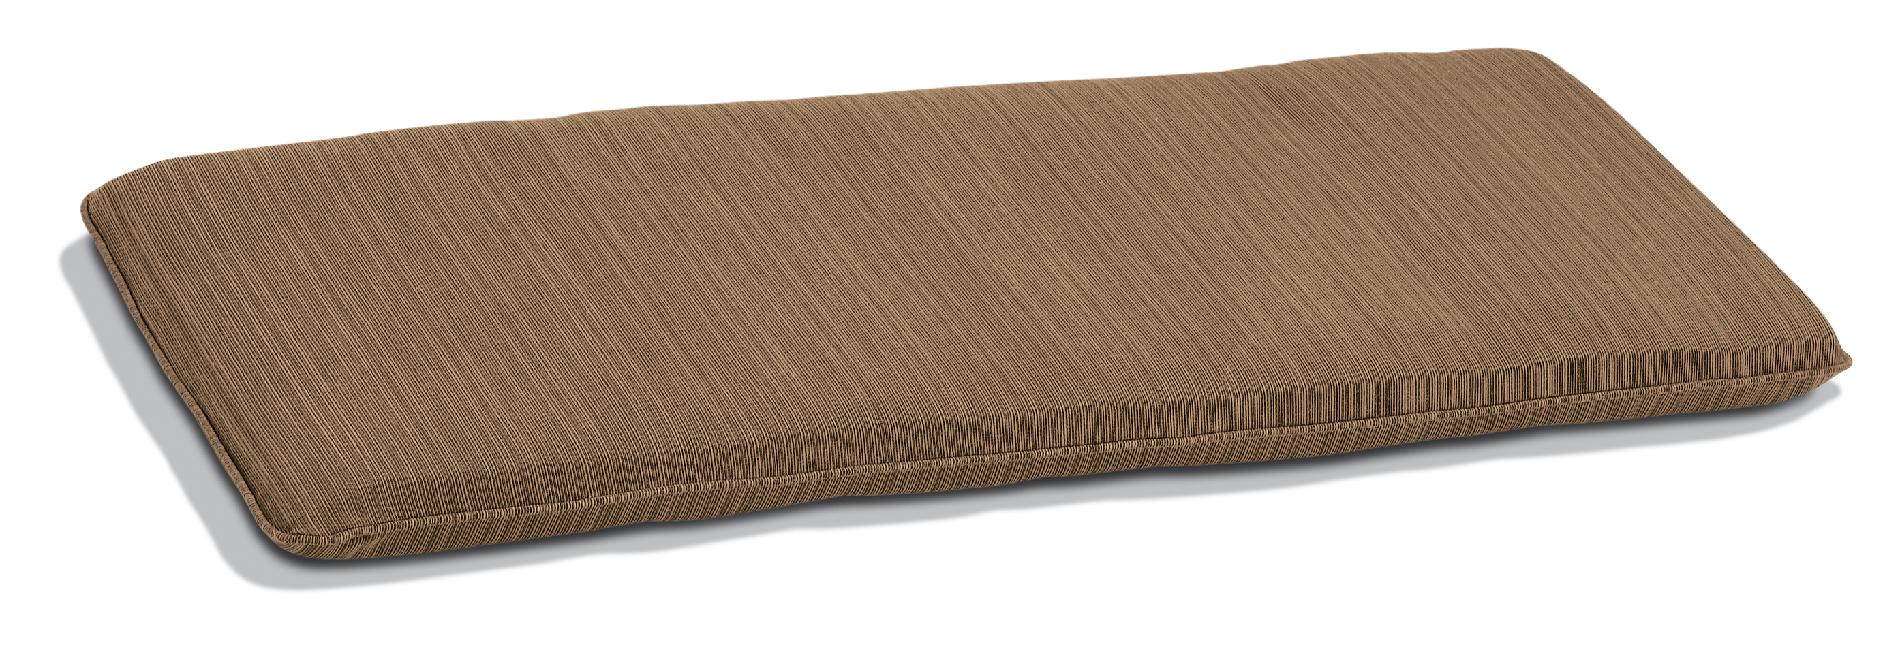 4' Backless Bench Cushion  Sunbrella&reg; Fabric  Dupione Walnut